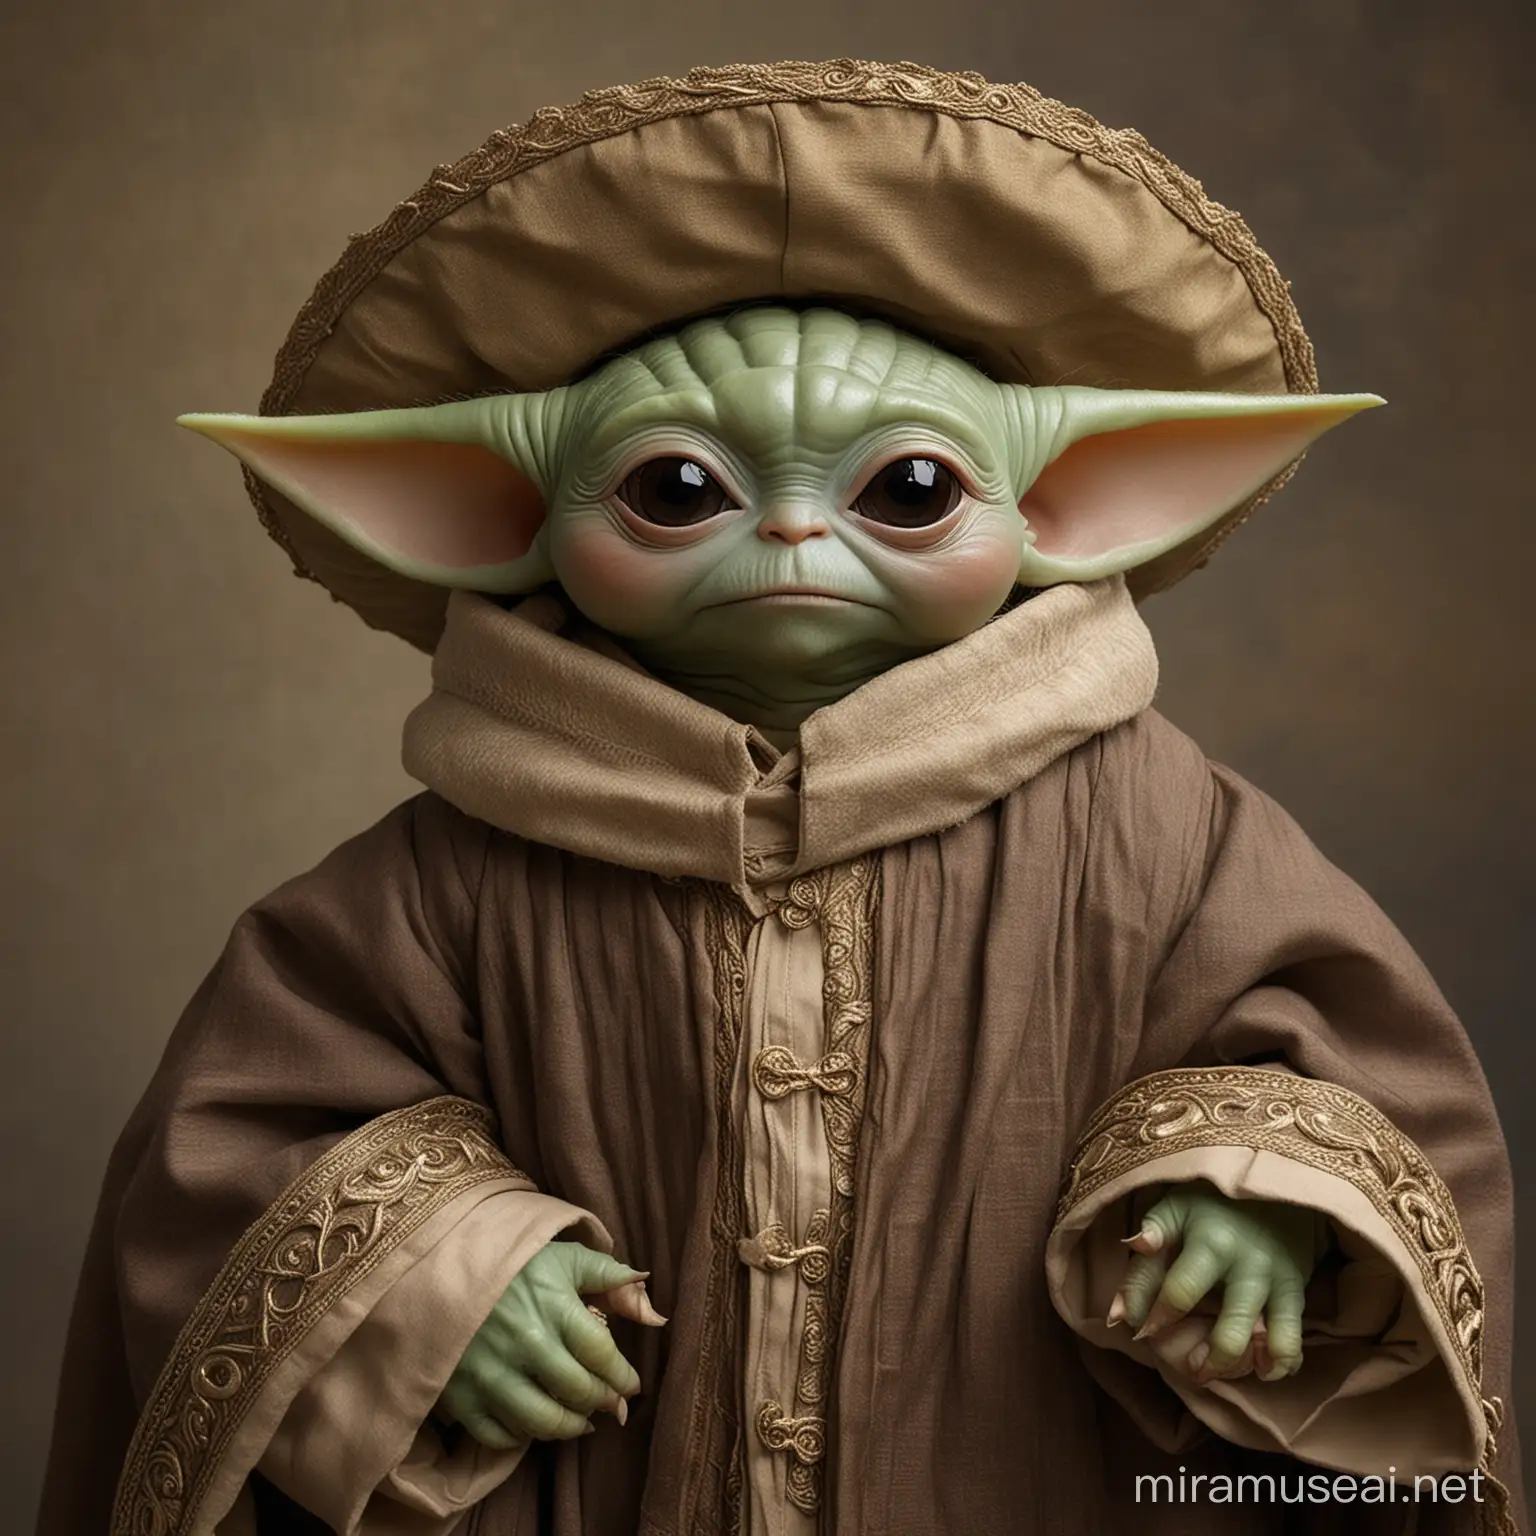 Adorable Baby Yoda in Renaissance Attire